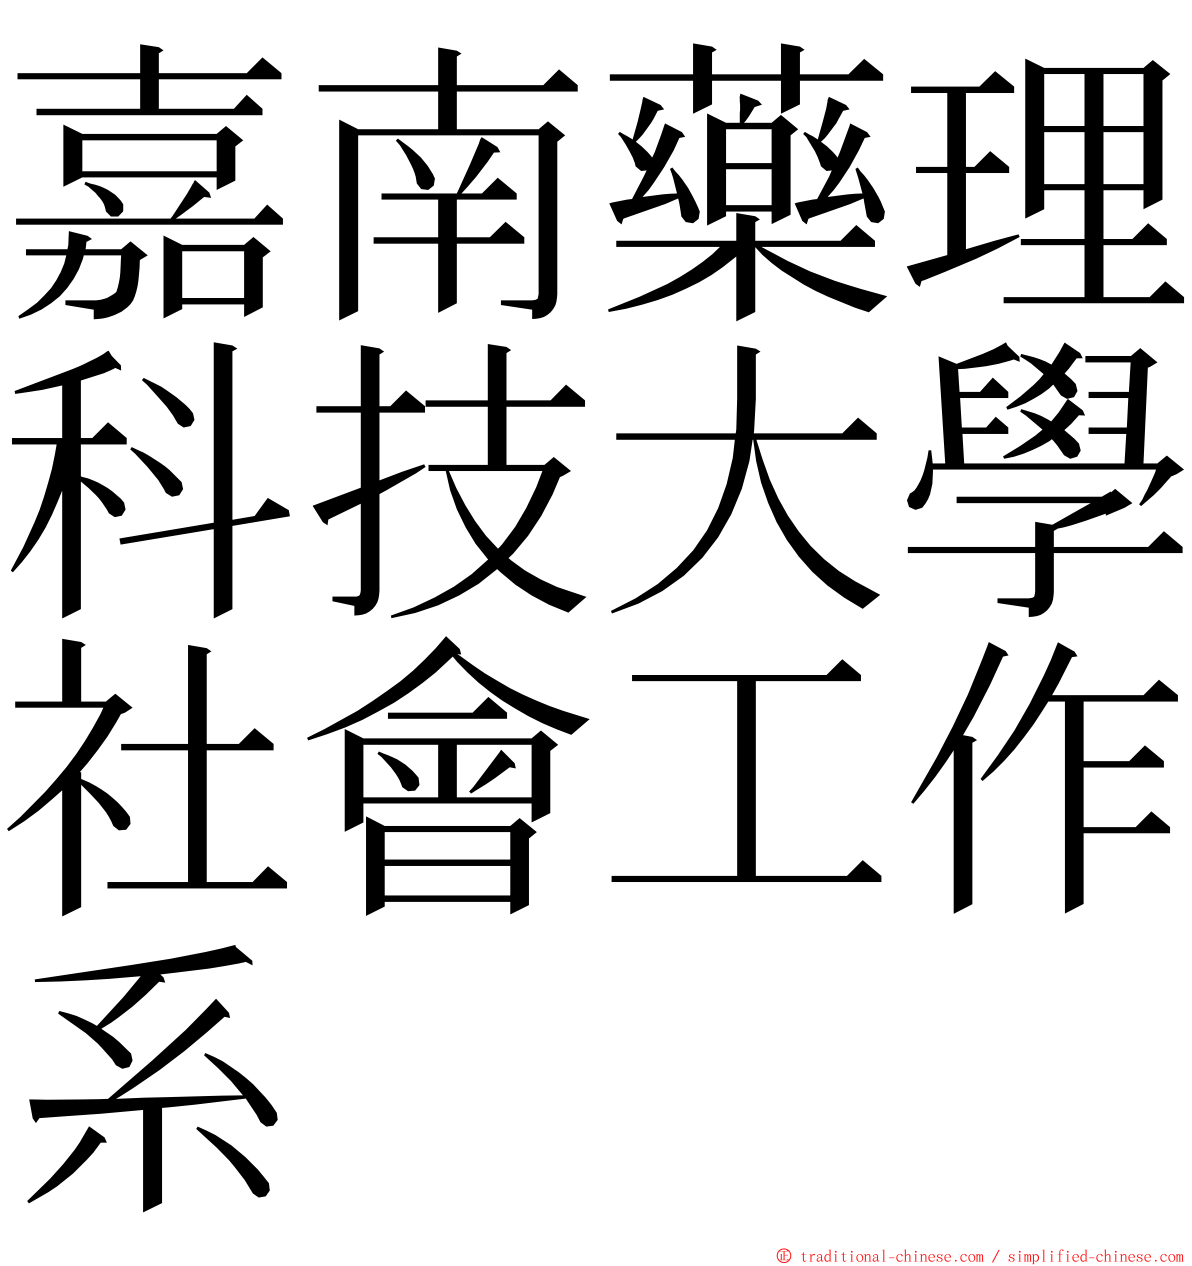 嘉南藥理科技大學社會工作系 ming font